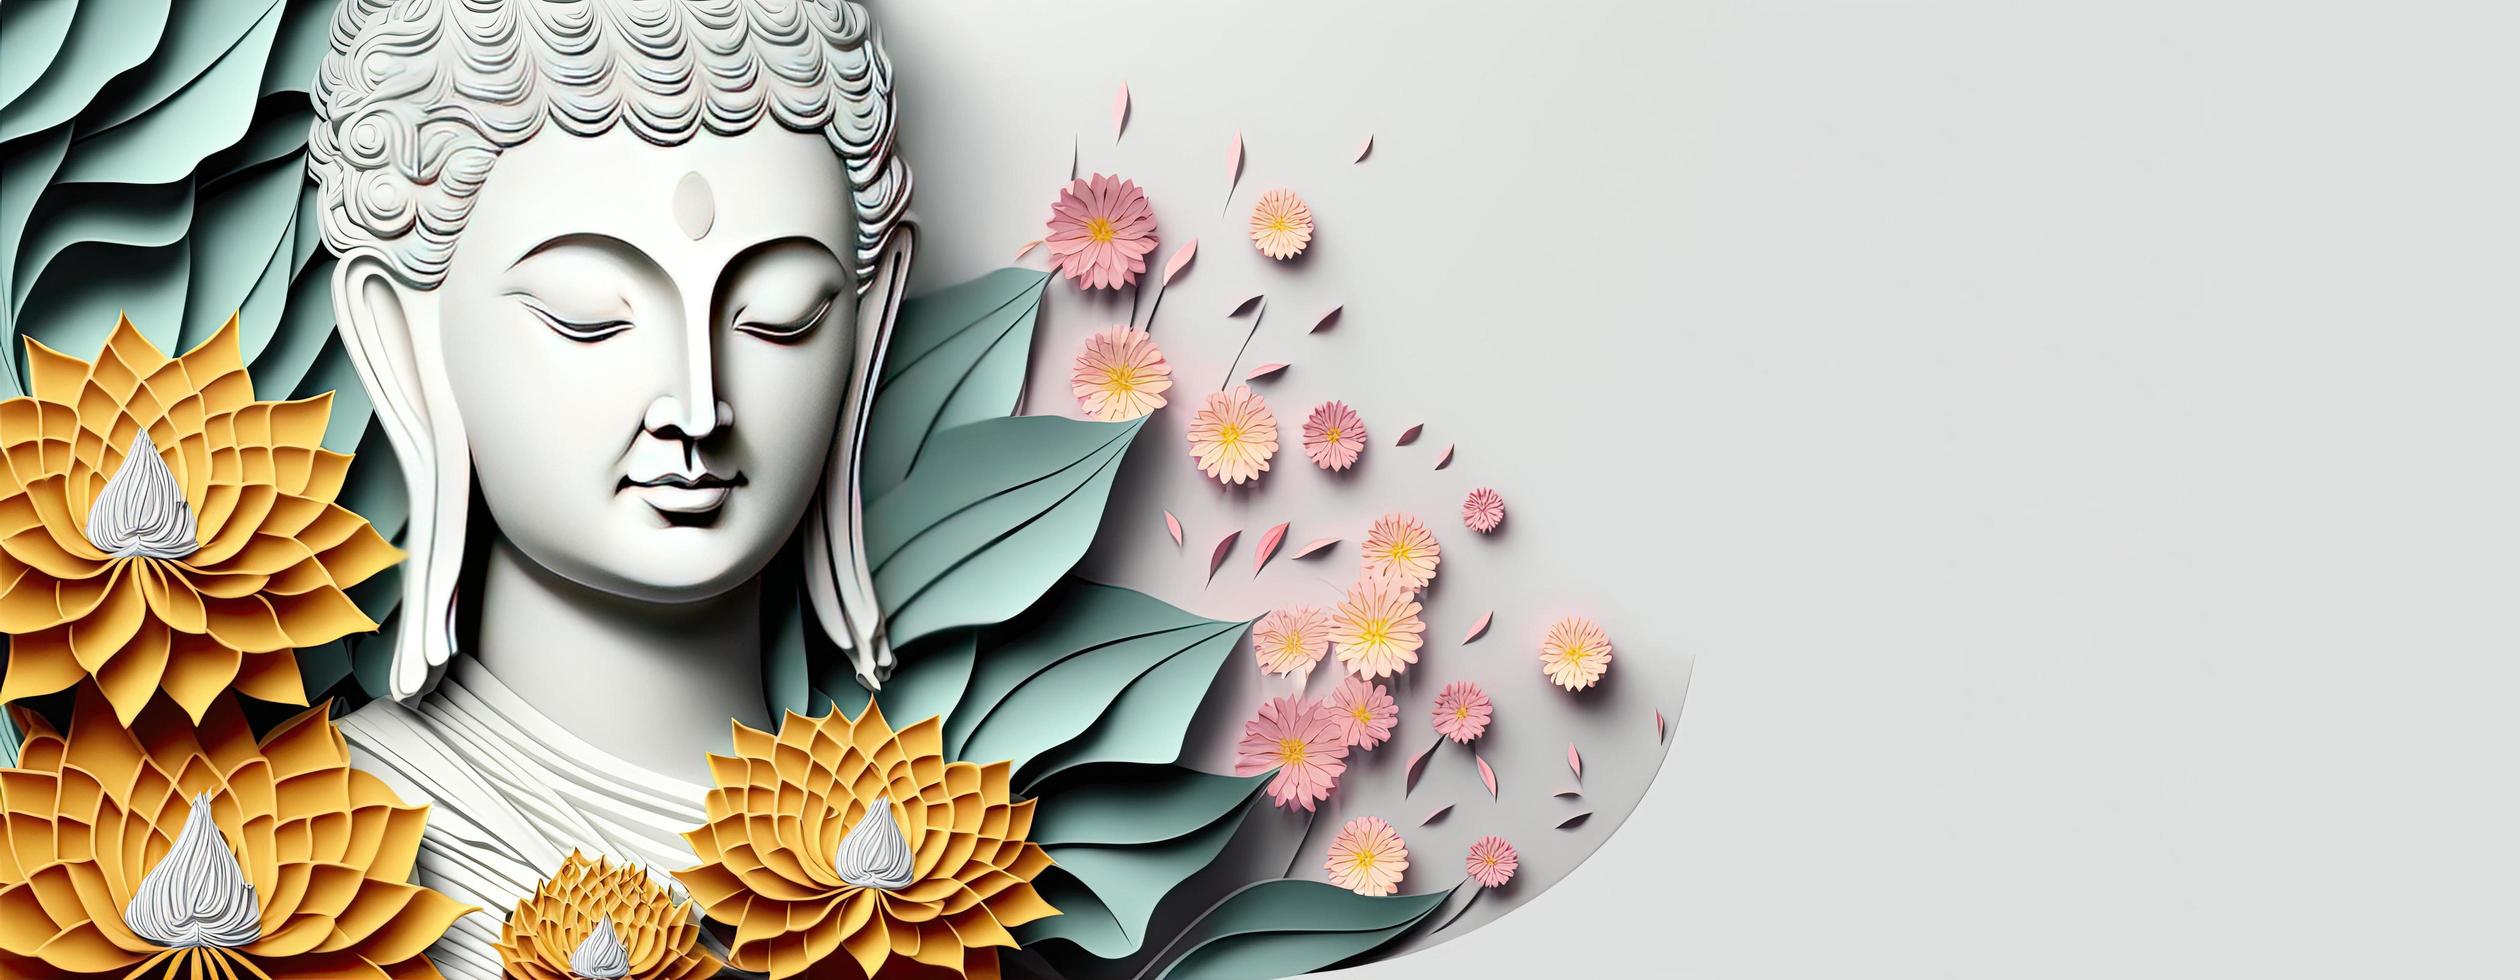 Buda papel cortar ilustración, Buda corte de papel ilustración con flores foto